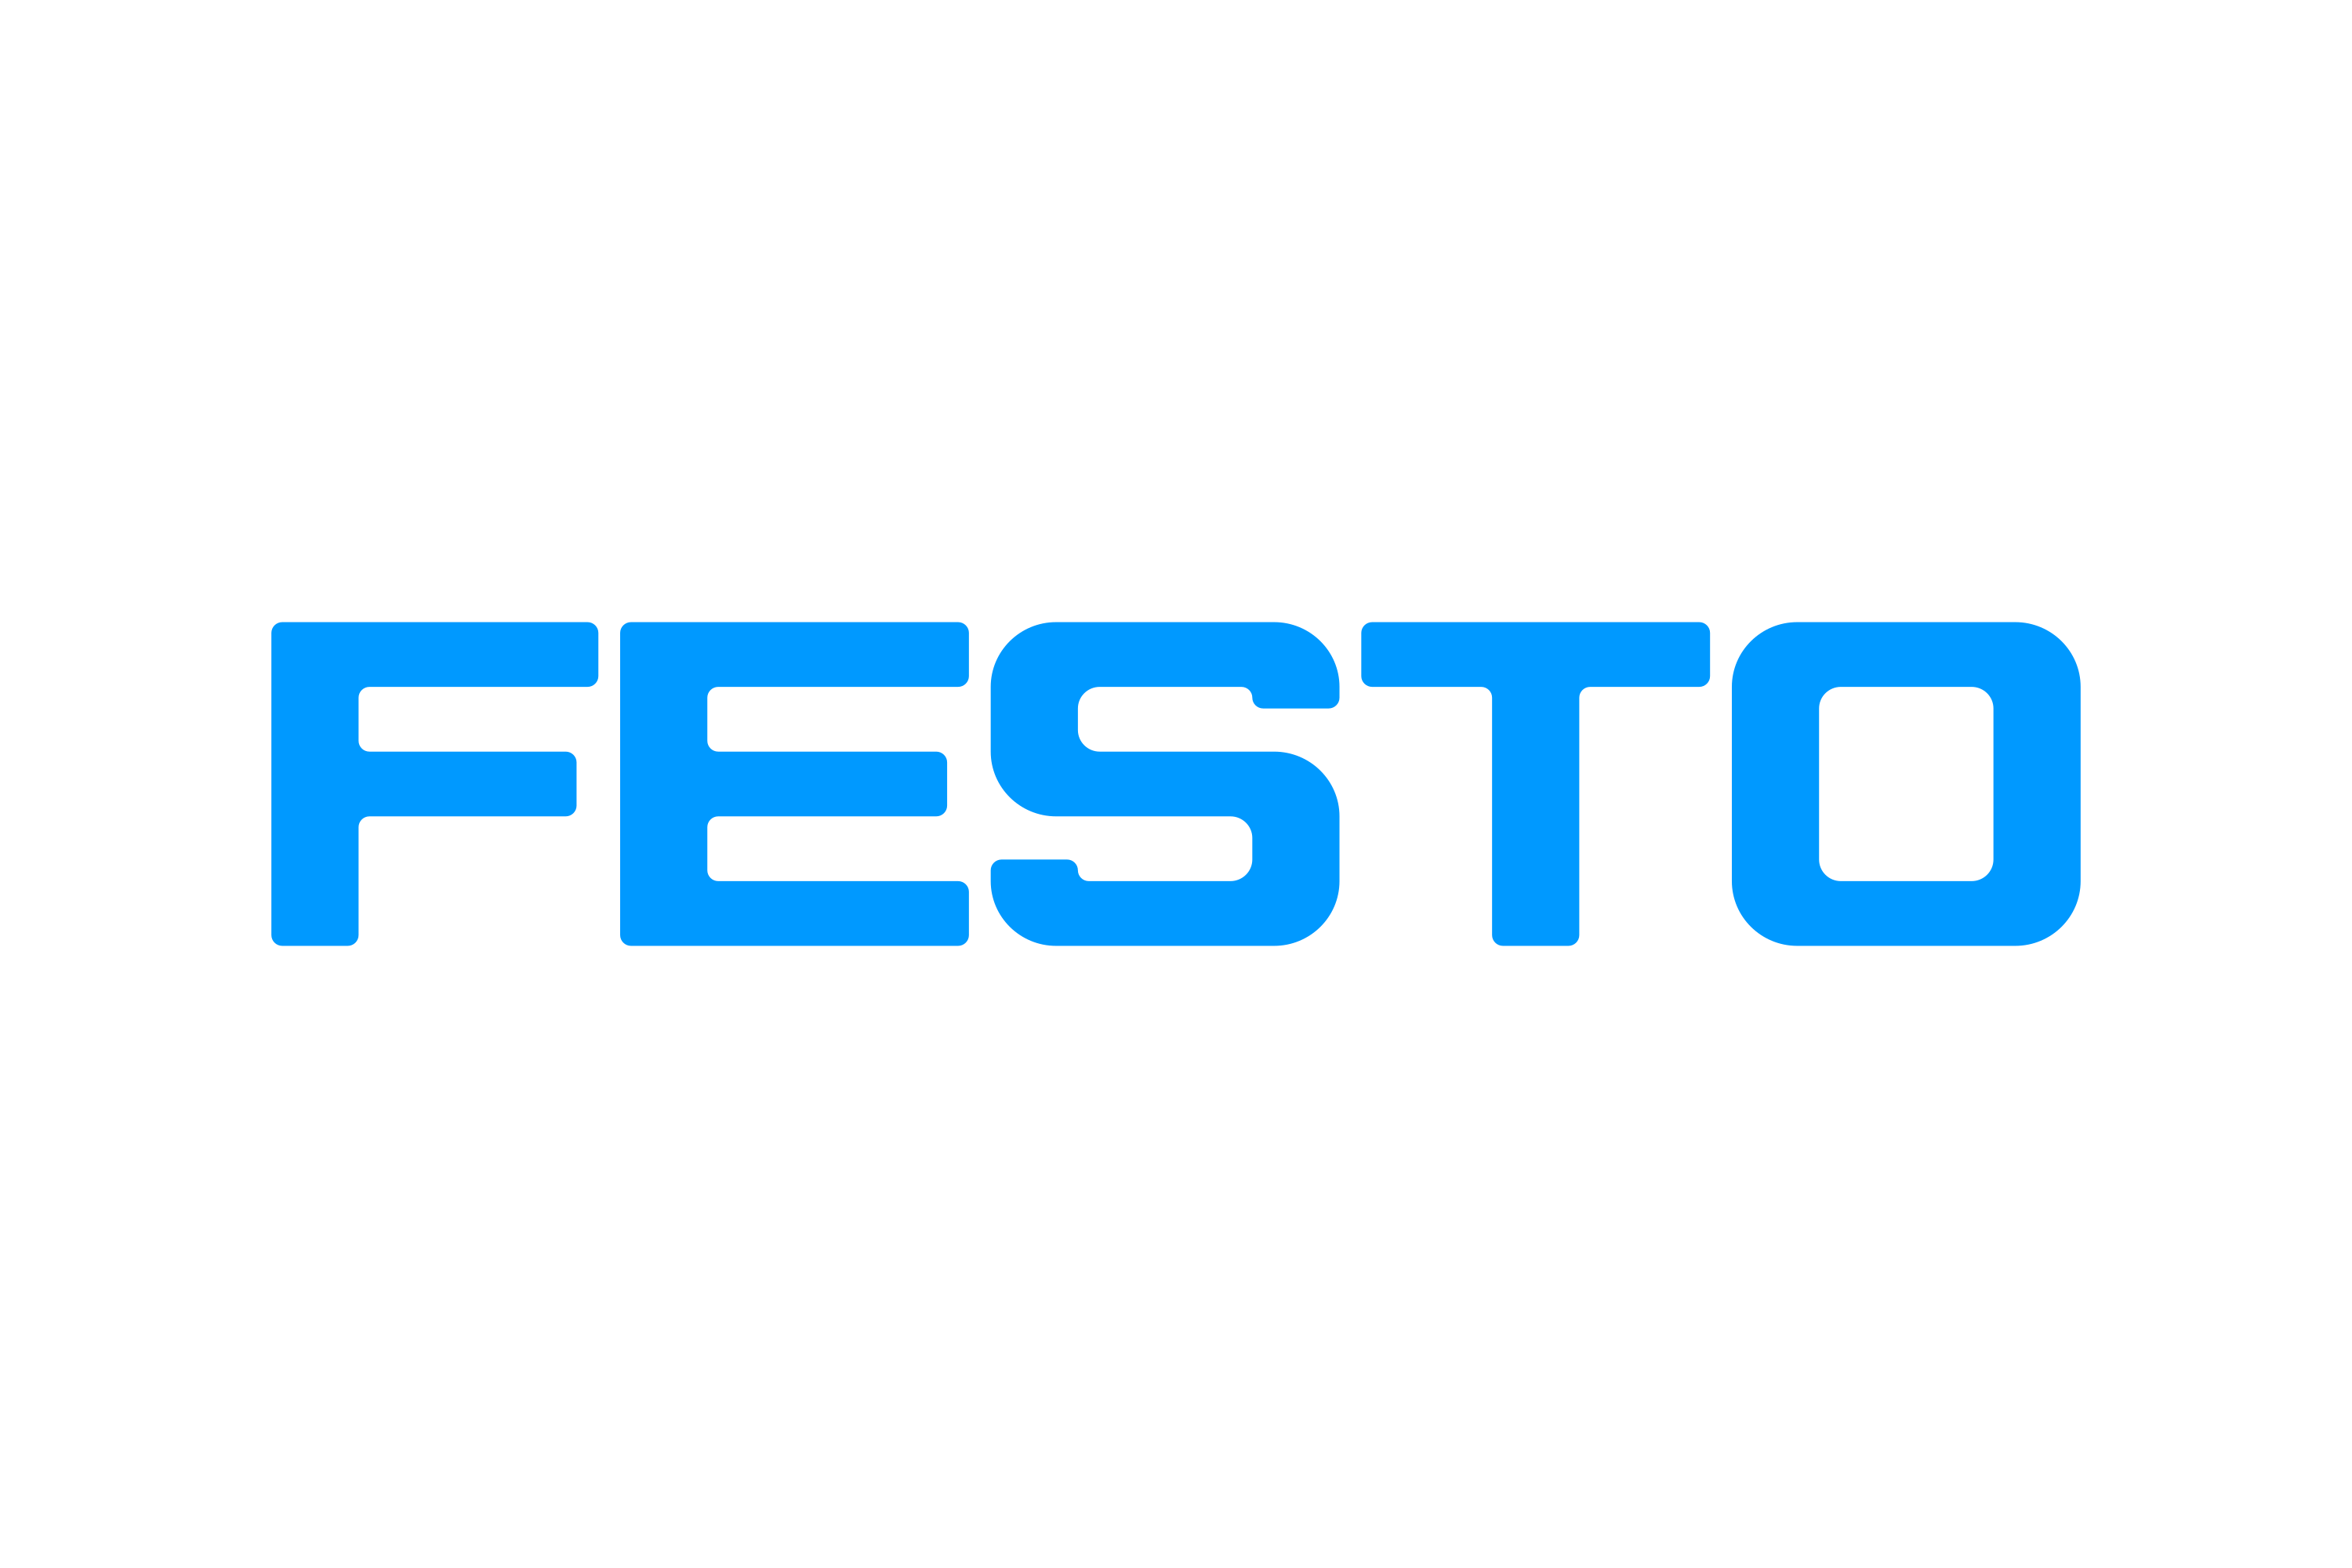 Festo-Logo